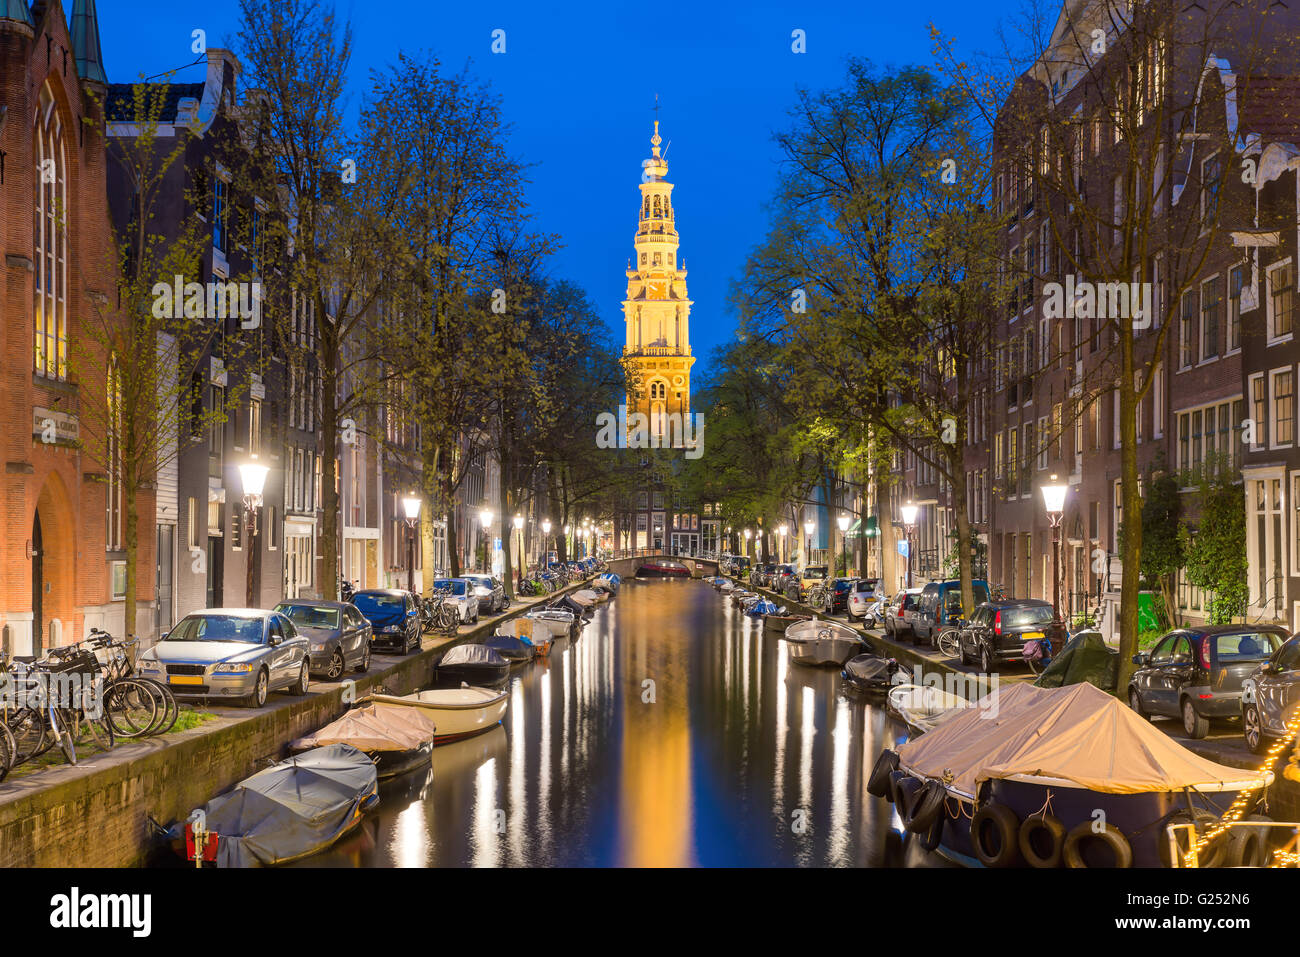 Zuiderkerk Kirchturm am Ende eines Kanals in der Stadt Amsterdam, die Niederlande in der Nacht. Stockfoto